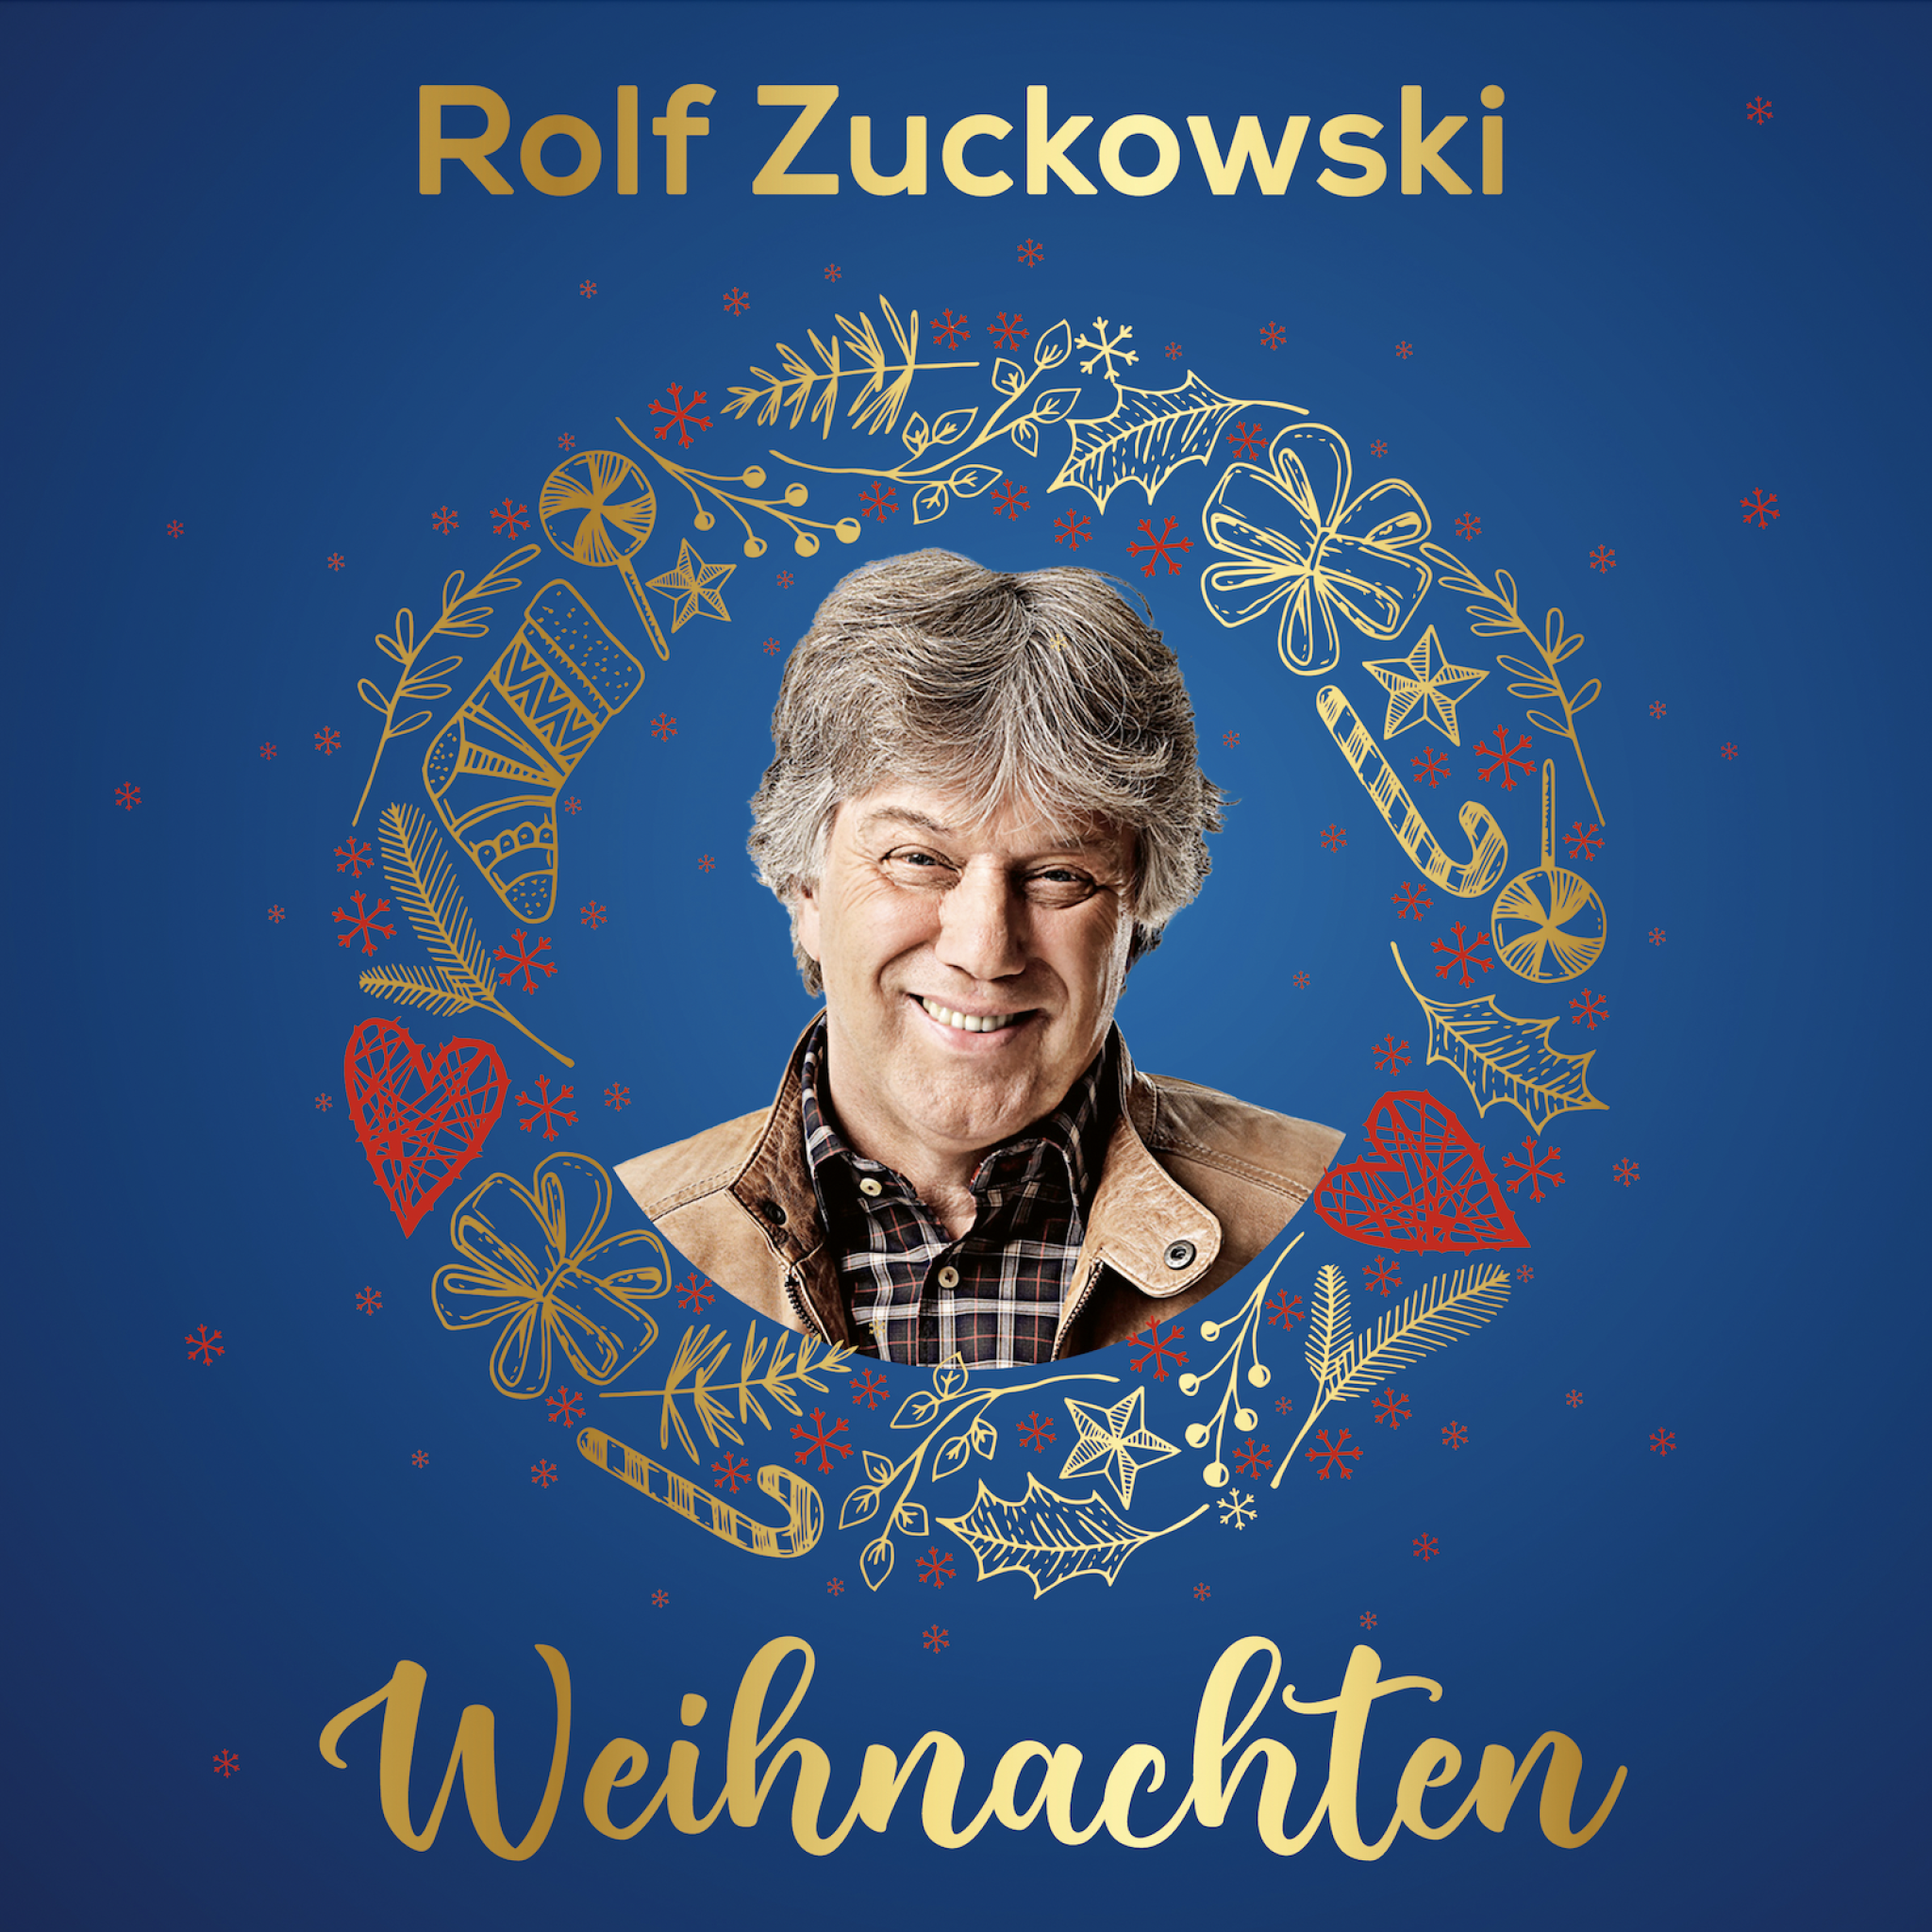 Rolf Zuckowski Weihnachten 2.jpg